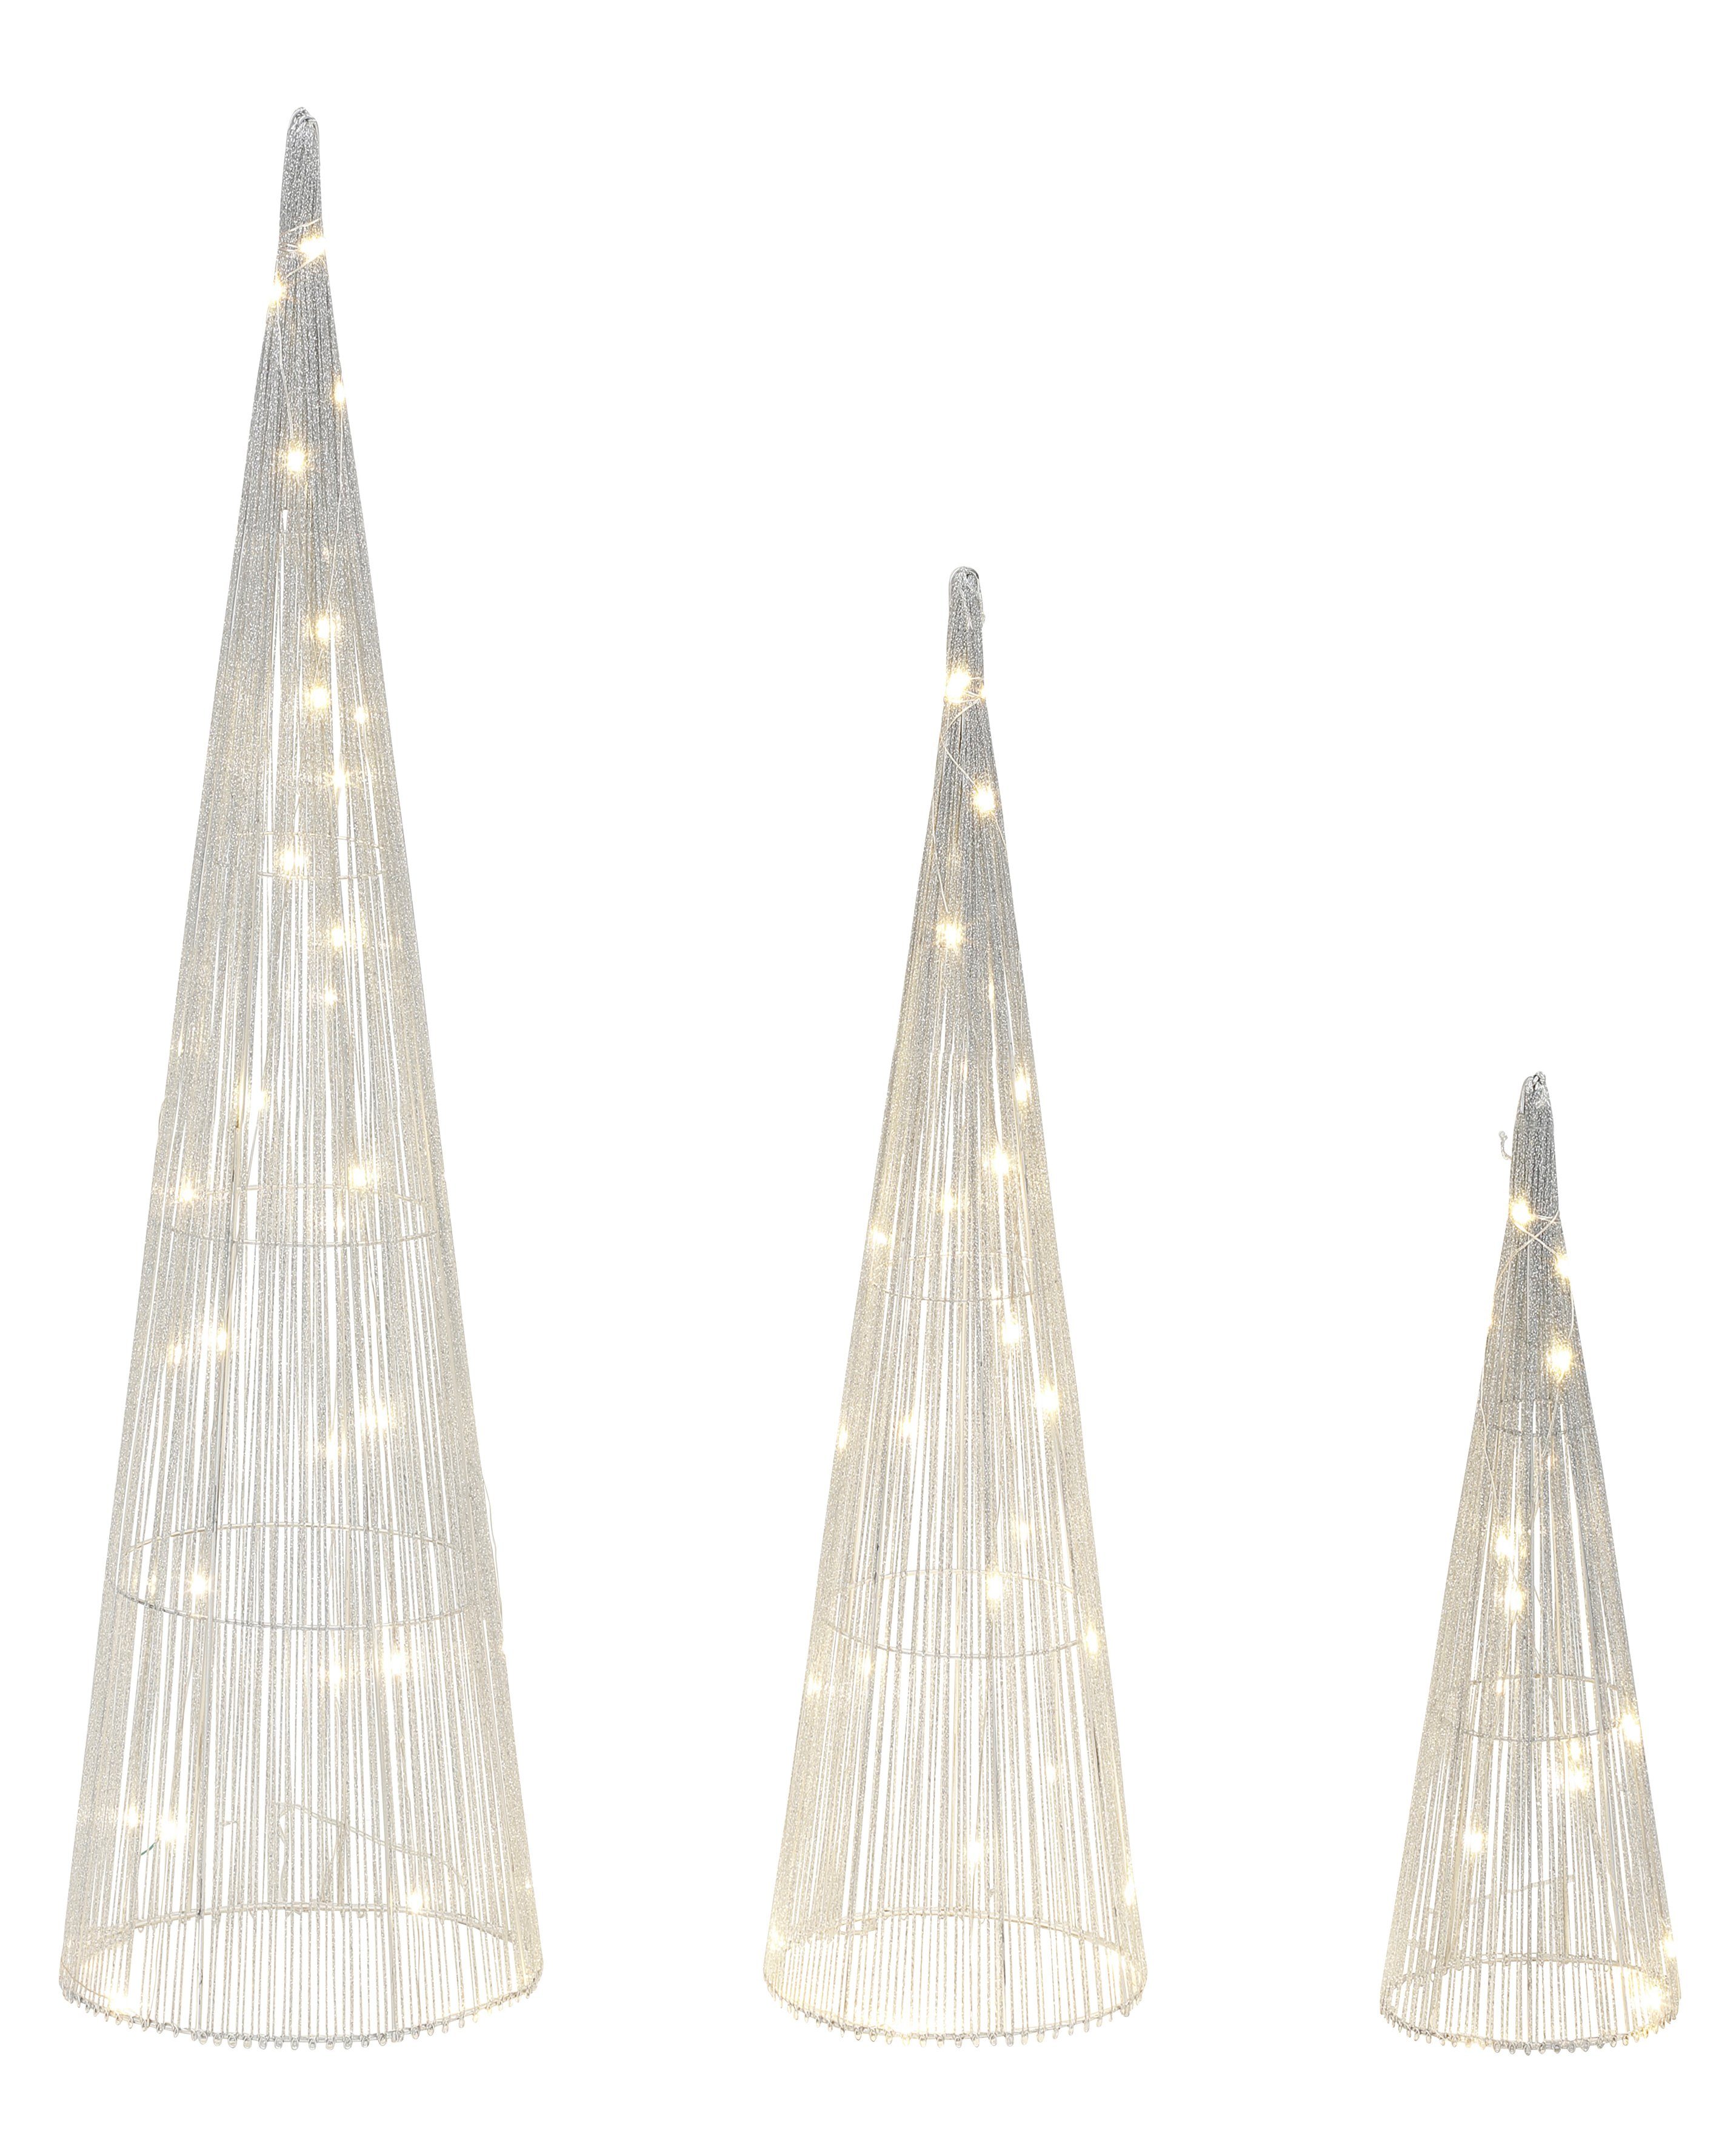 LED LED-Beleuchtung, Warmweiß, Star-Max Pyramiden Dekolicht 3 Leucht schimmernde silberfarben LED fest in LED-Bäume, Größen integriert, mit Effektvolle Pyramiden Weihnachtsdeko,